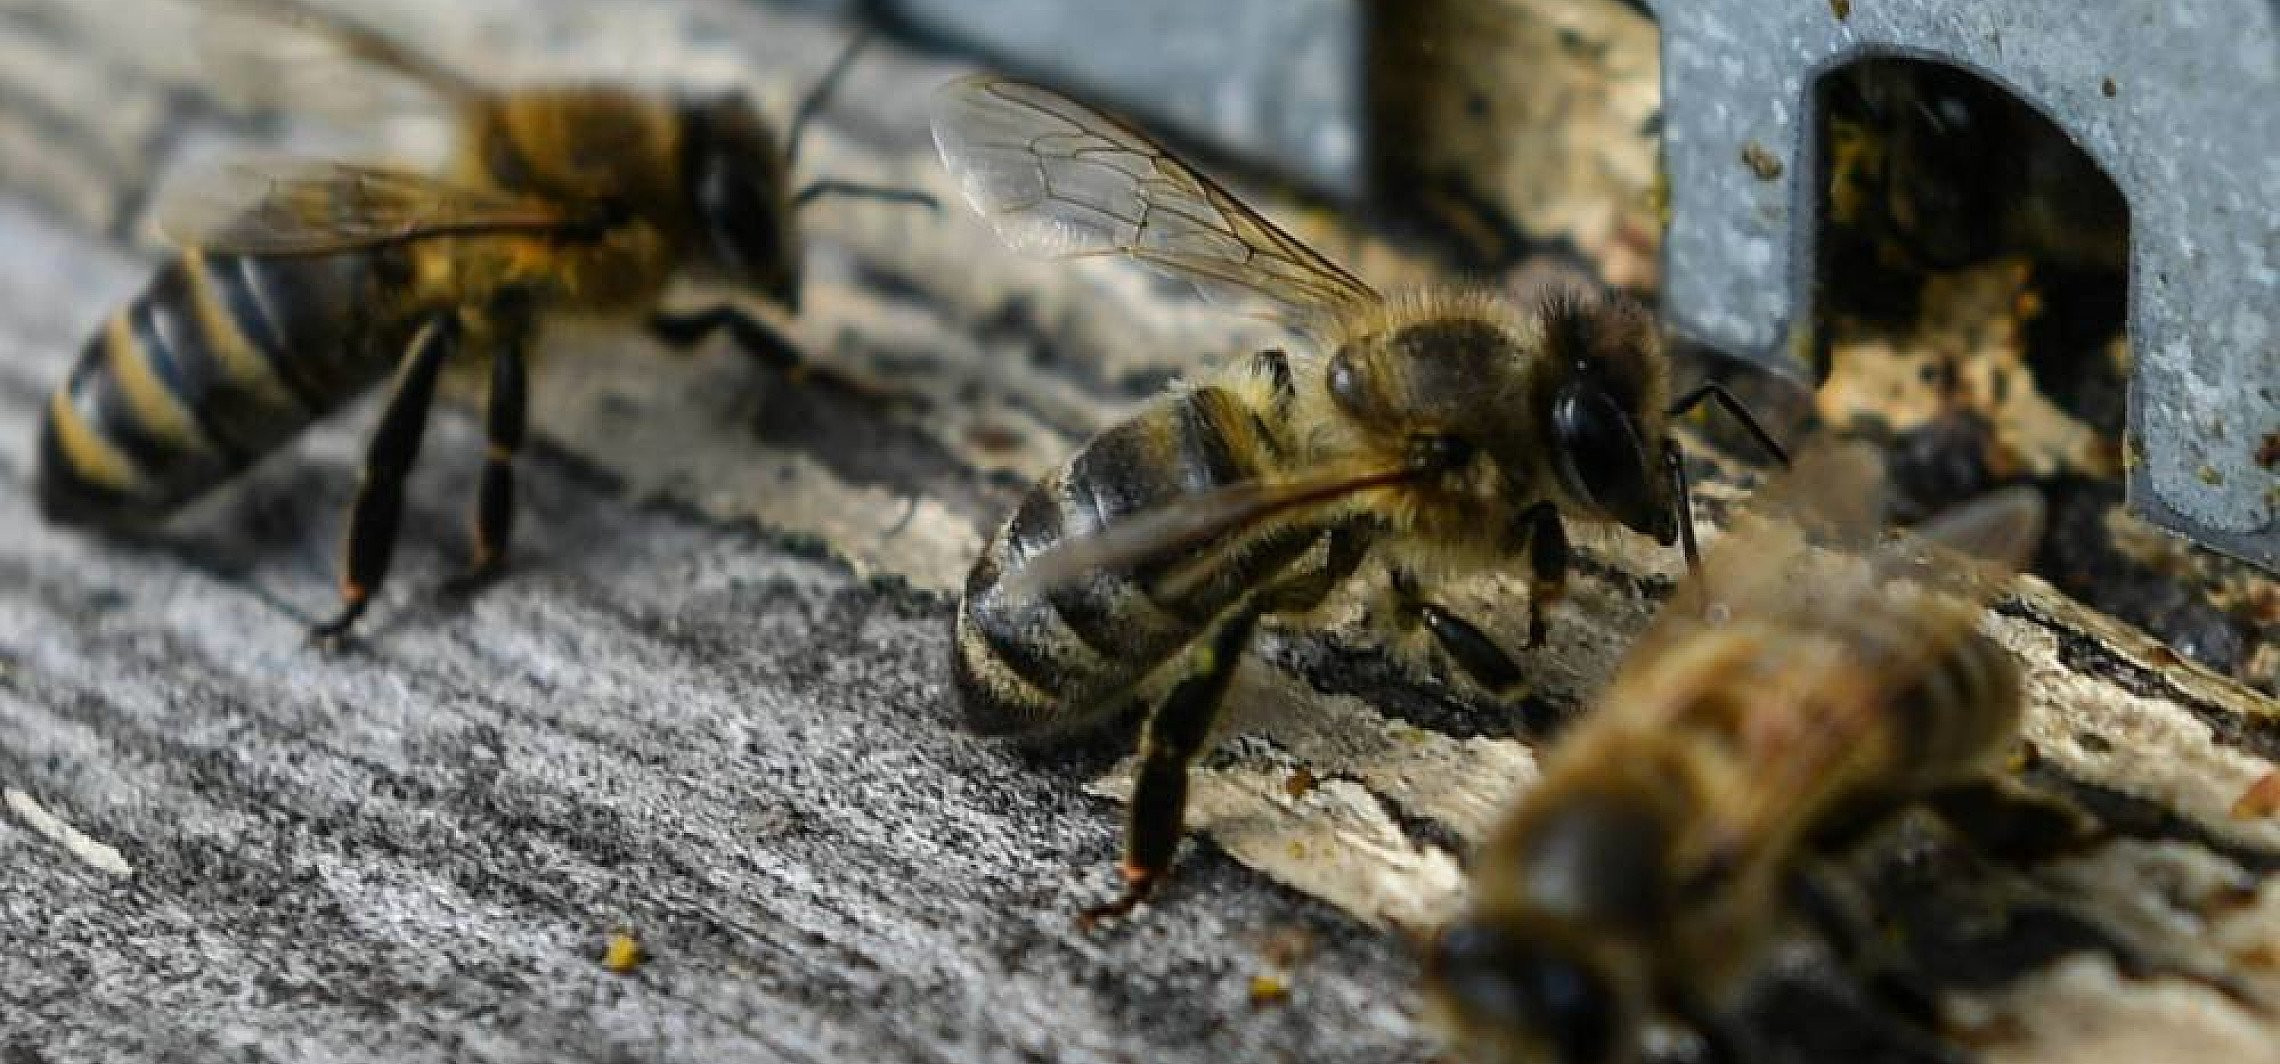 O czym bzyczą pszczoły w ulu? Badacze tłumaczą pszczele sygnały